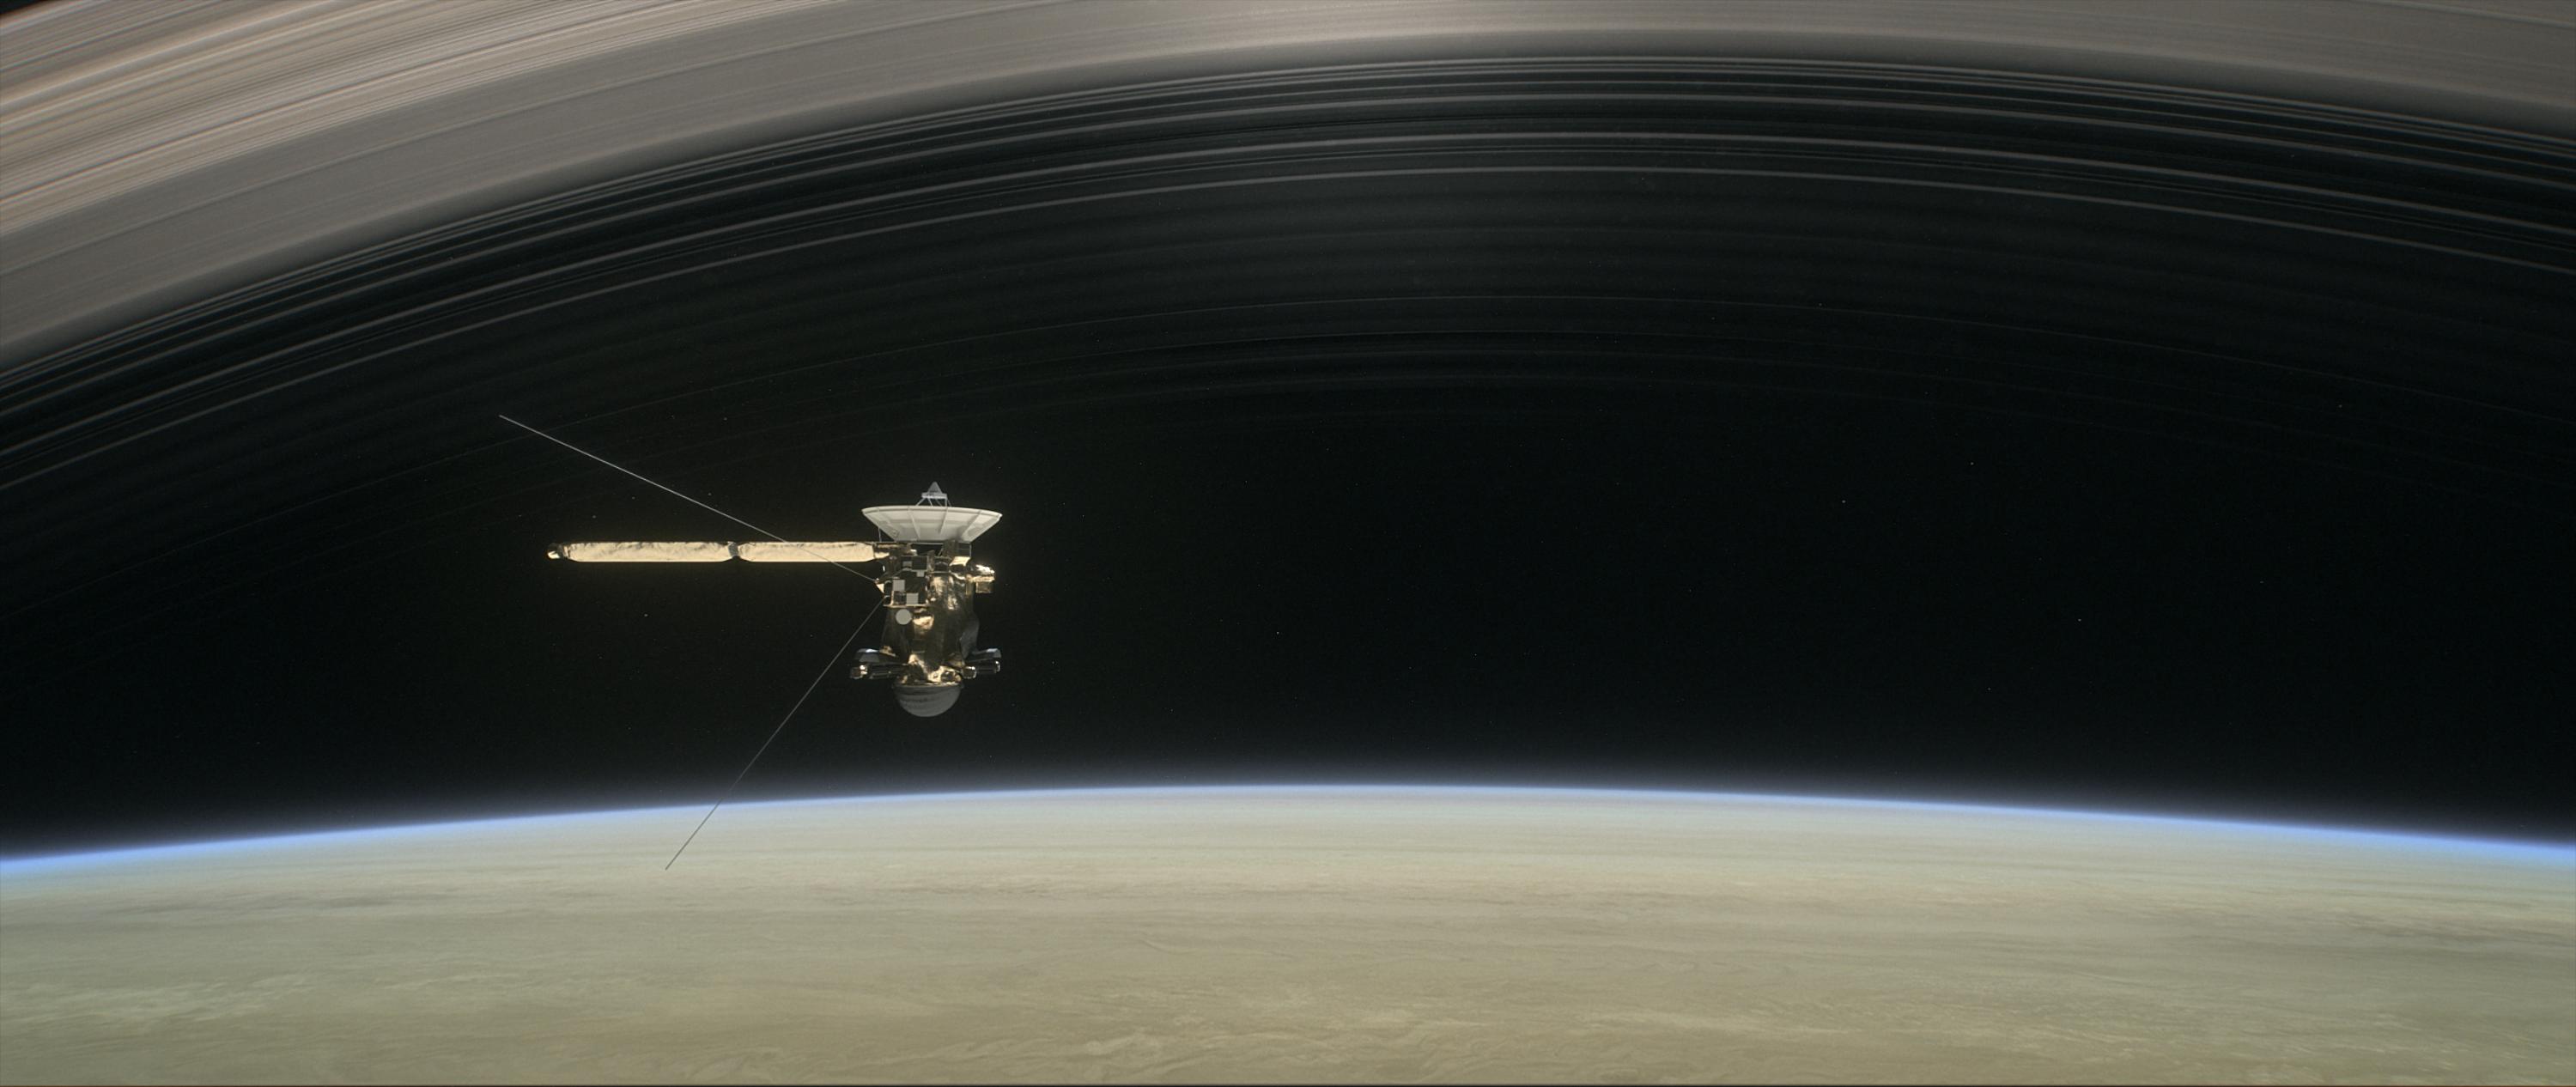 Illusztráció a Cassini áthaladására a Szaturnusz és gyűrűi között. Forrás: NASA/JPL